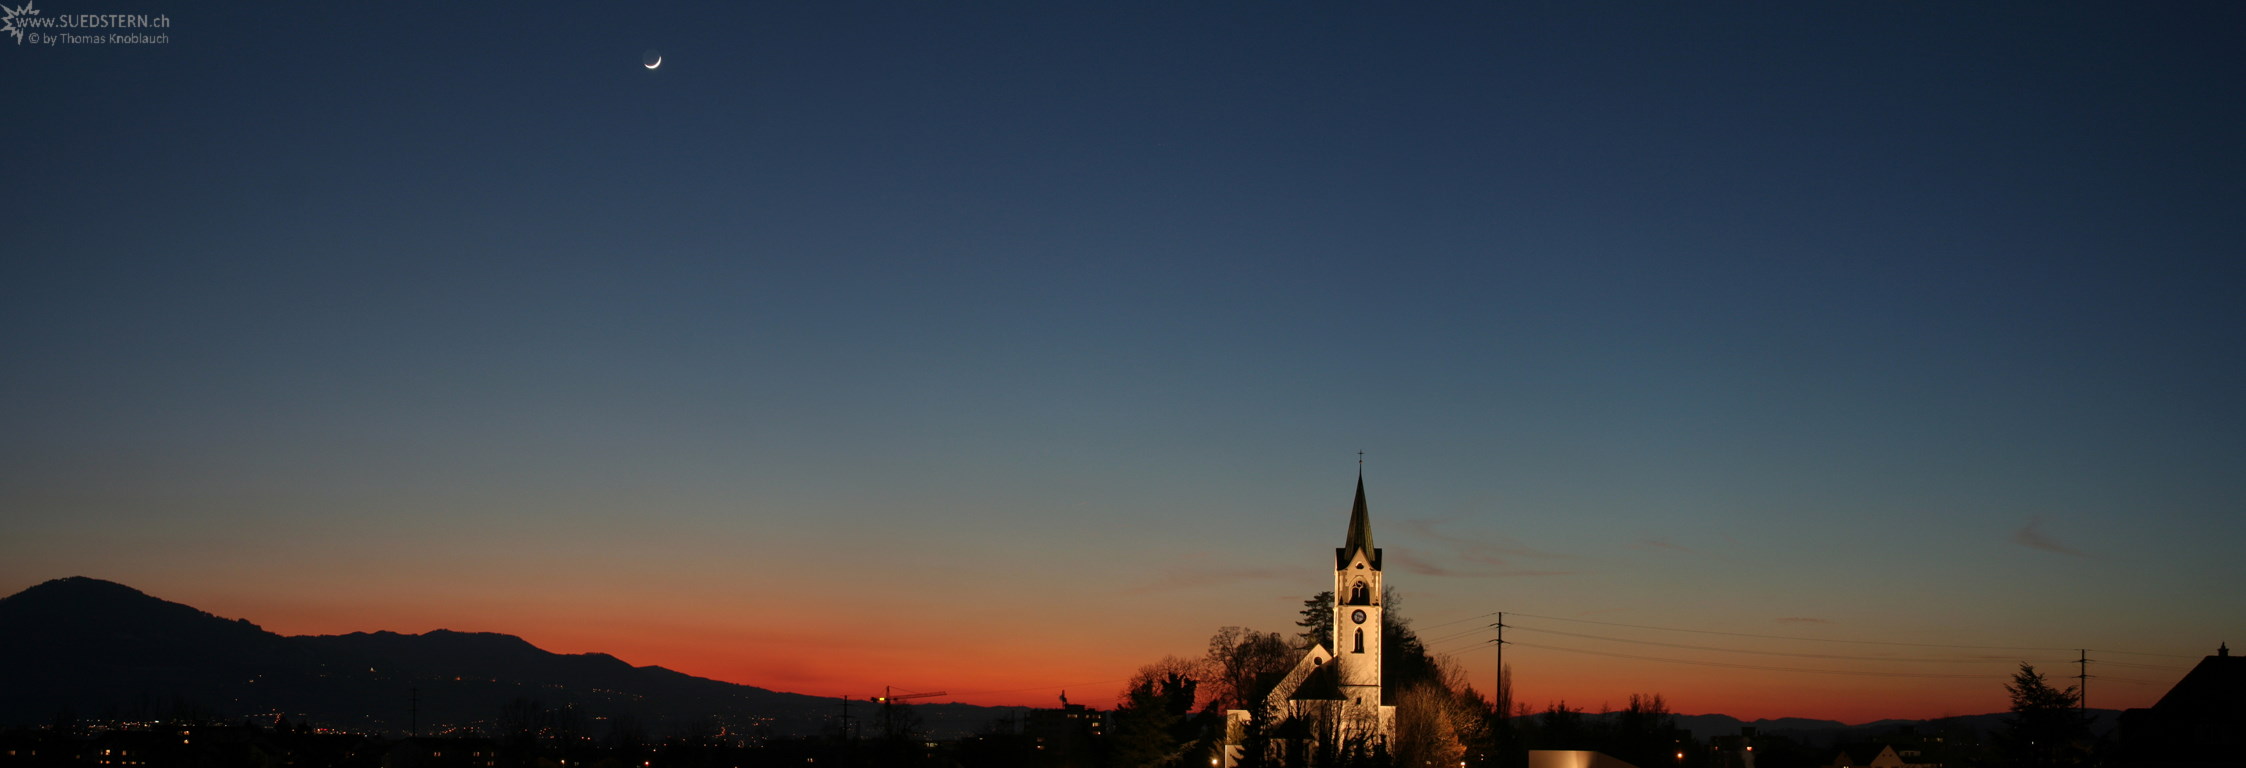 2008-02-09 - Panoramic Sundown with Moon and Church, Jona, Switzerland